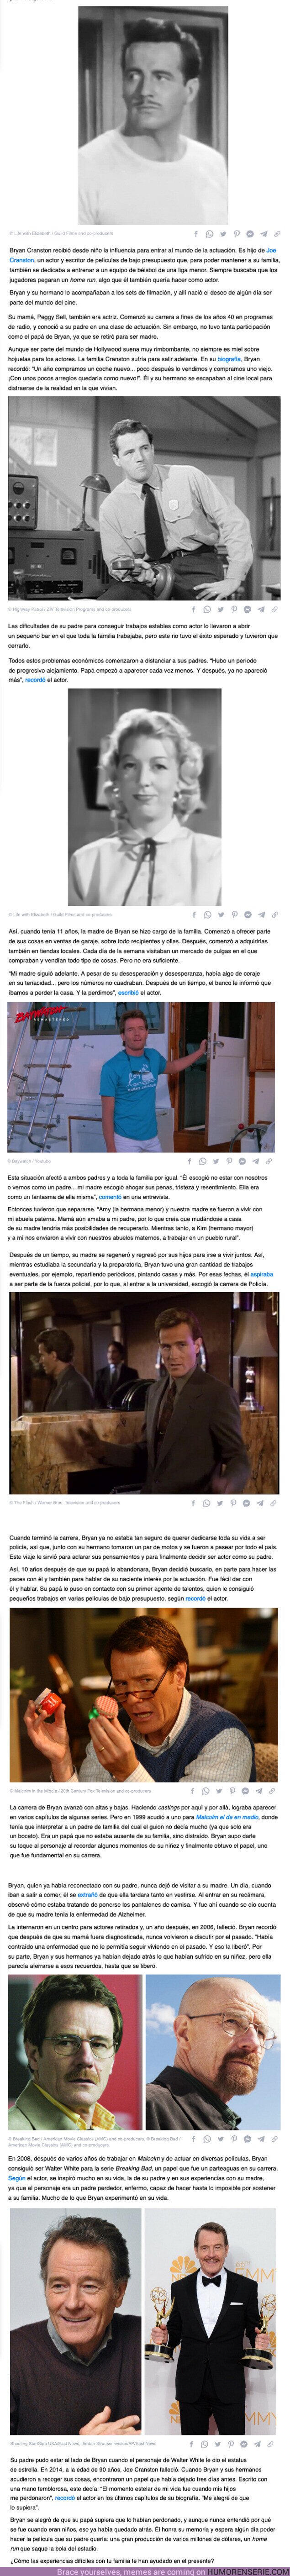 107479 - GALERÍA: Cómo la infancia difícil de Bryan Cranston lo convirtió en uno de los actores más reconocidos de la TV